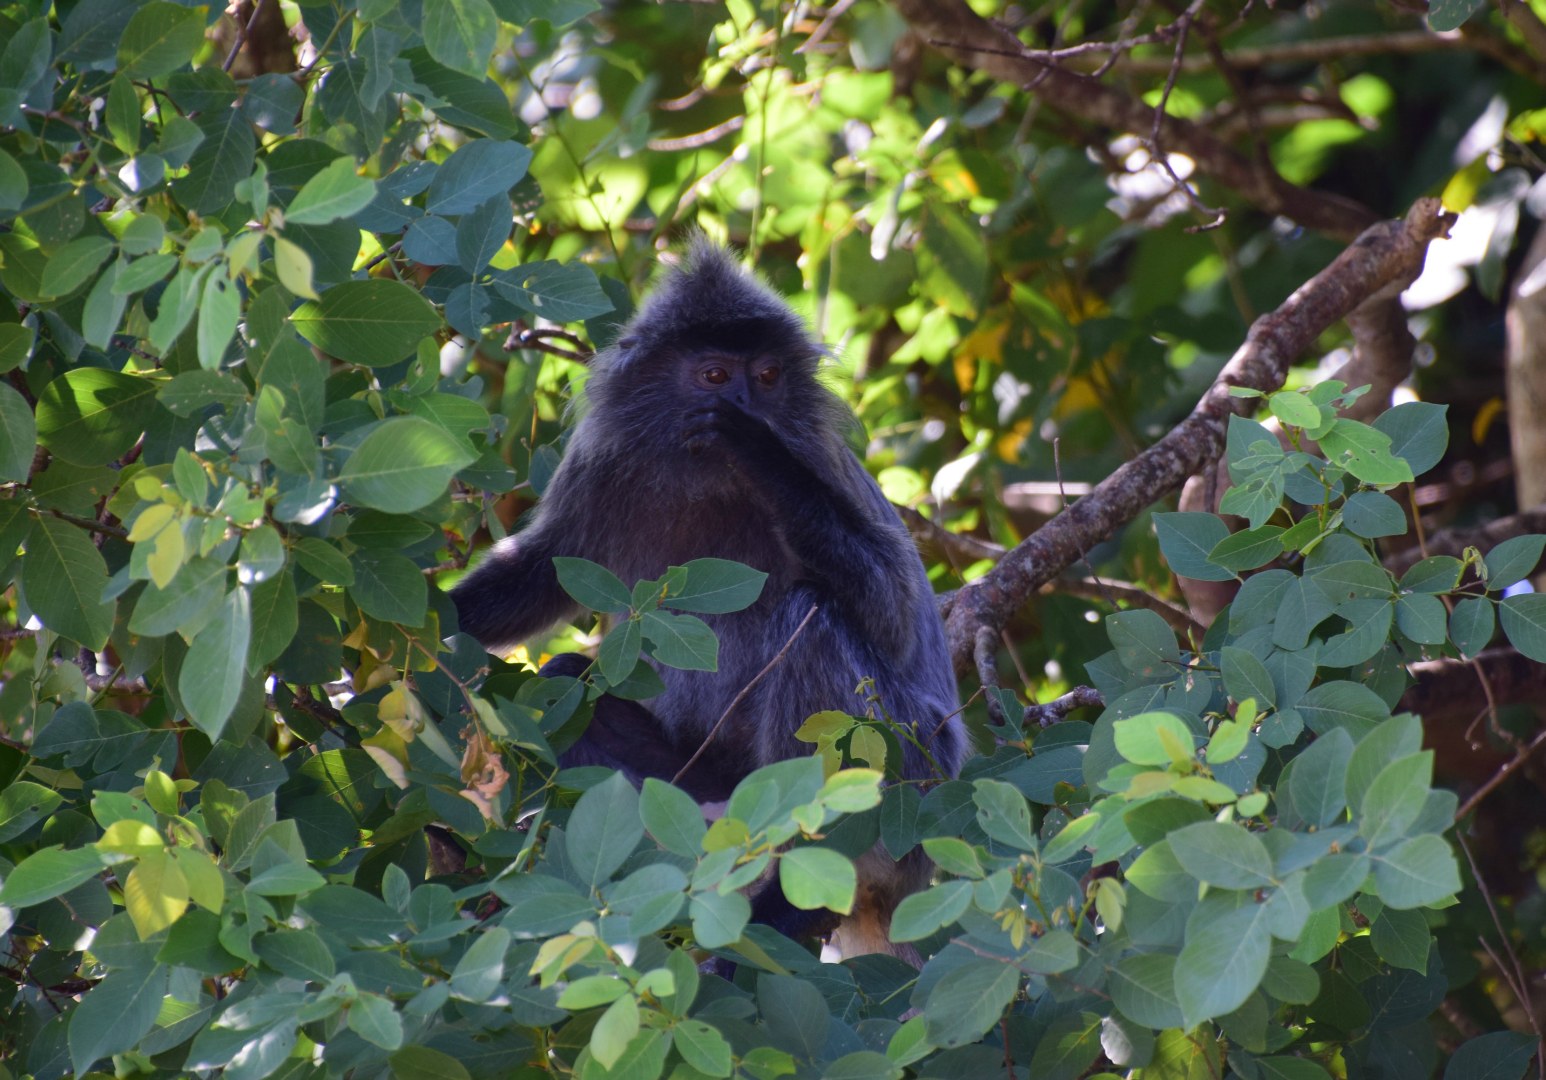 Silvered Leaf Monkey, Bako National Park